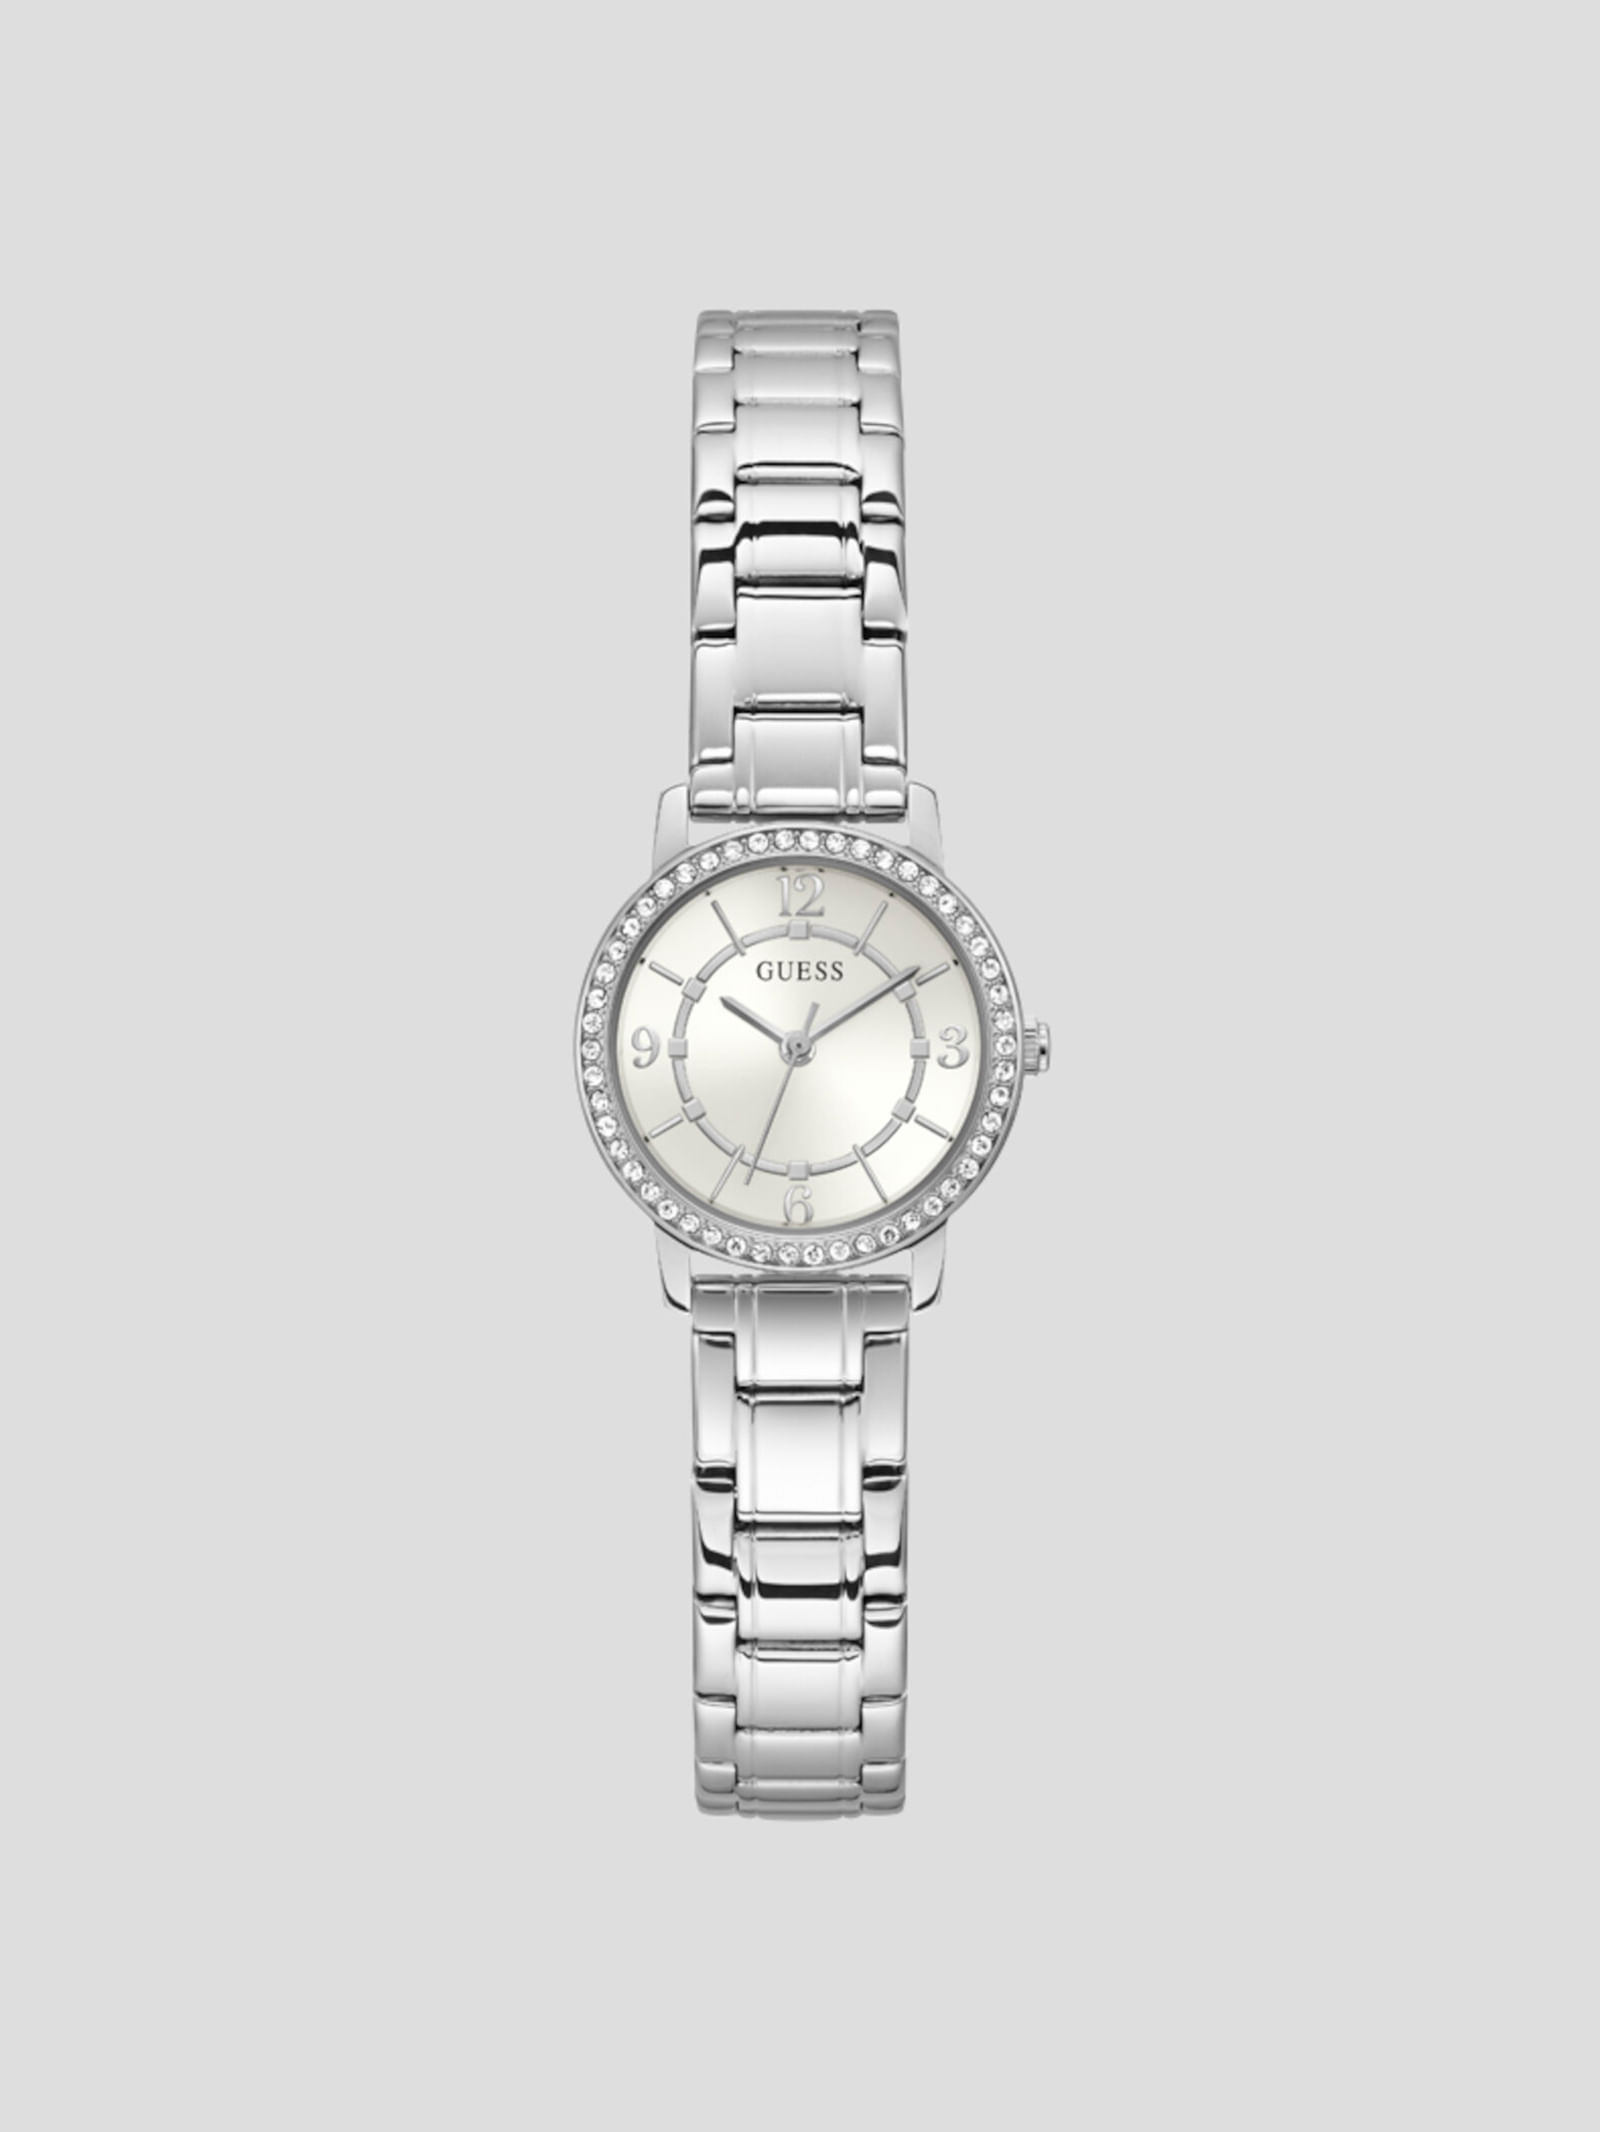 Relojes para mujer, ¡Diseño y elegancia!